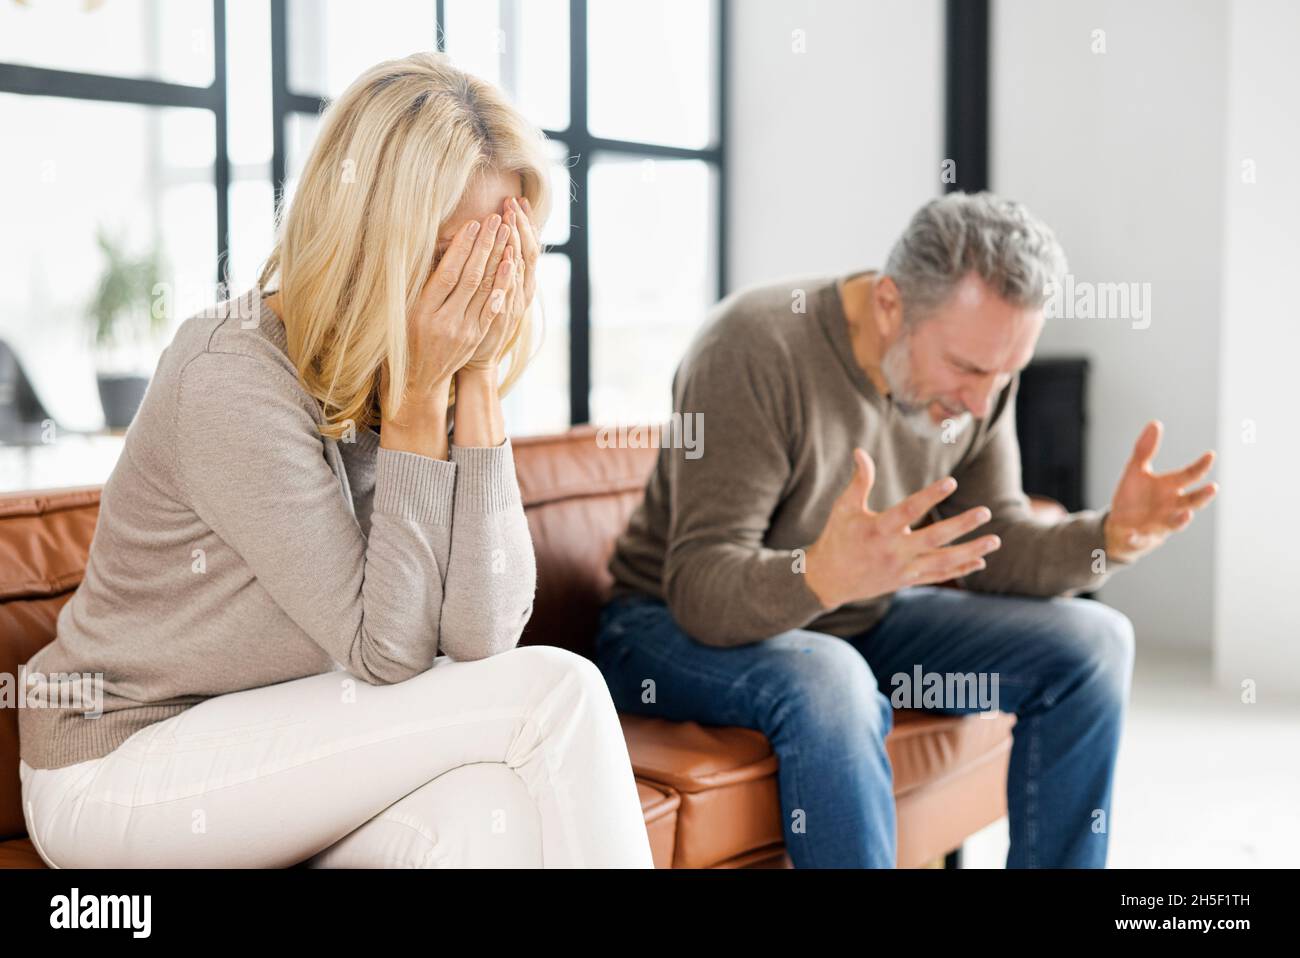 Hausmissbrauch-Konzept. Deprimierte Frau mittleren Alters sitzt auf der Couch und weint, ein gereizter und wütender reifer Mann schreit auf dem Hintergrund. Ein Paar streitet zu Hause Stockfoto